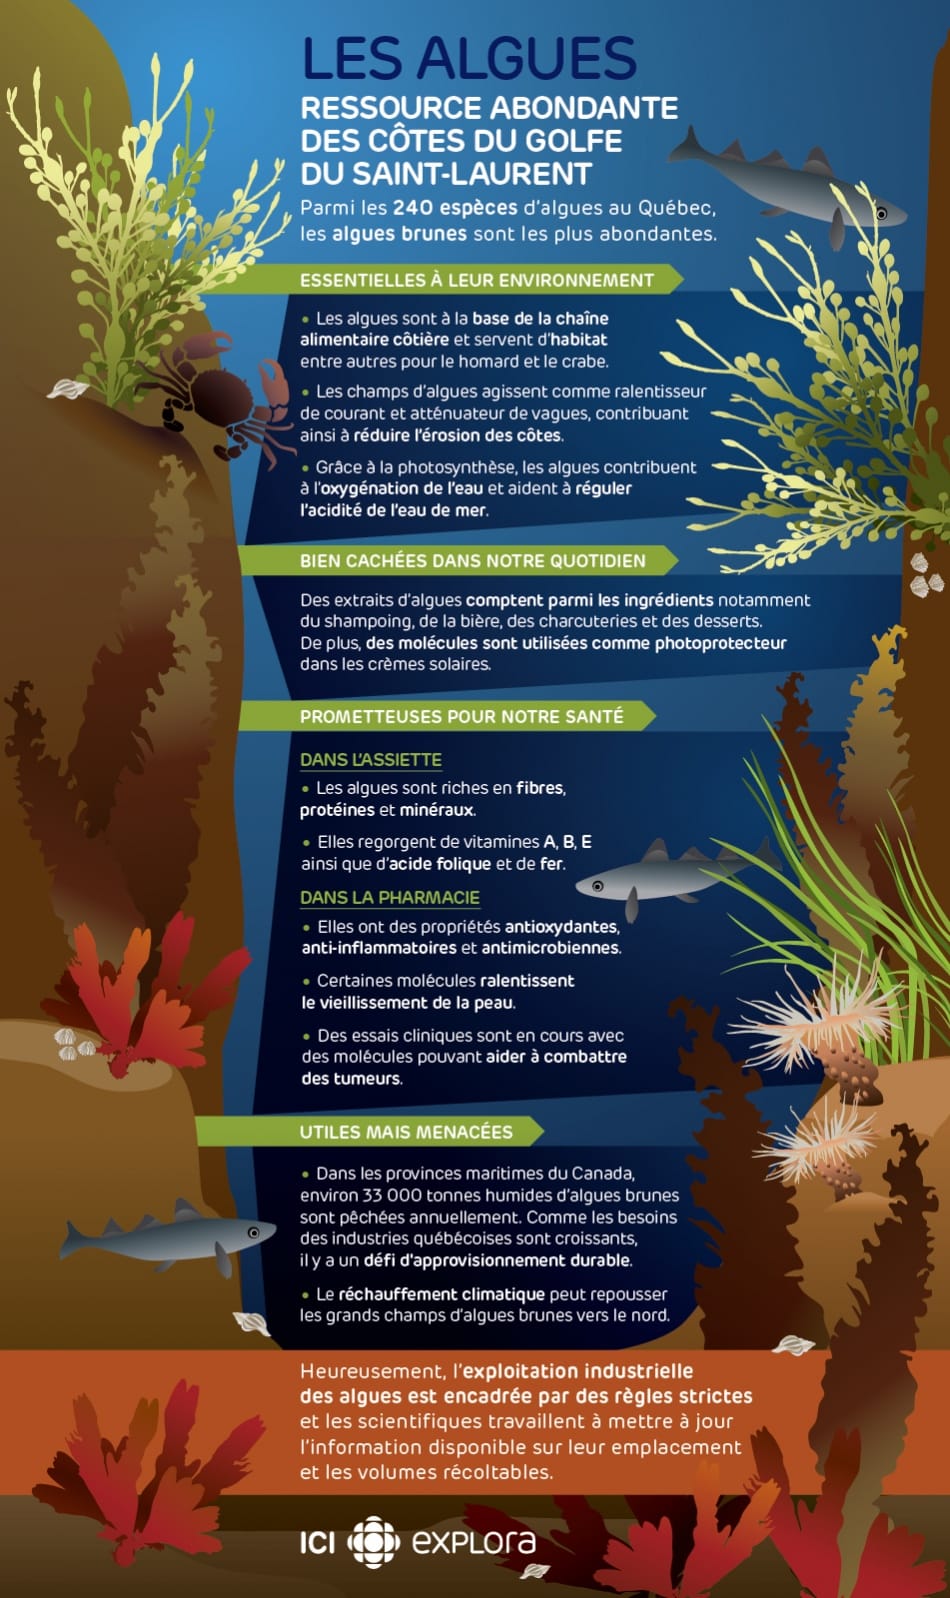 Les algues : utiles mais menacées